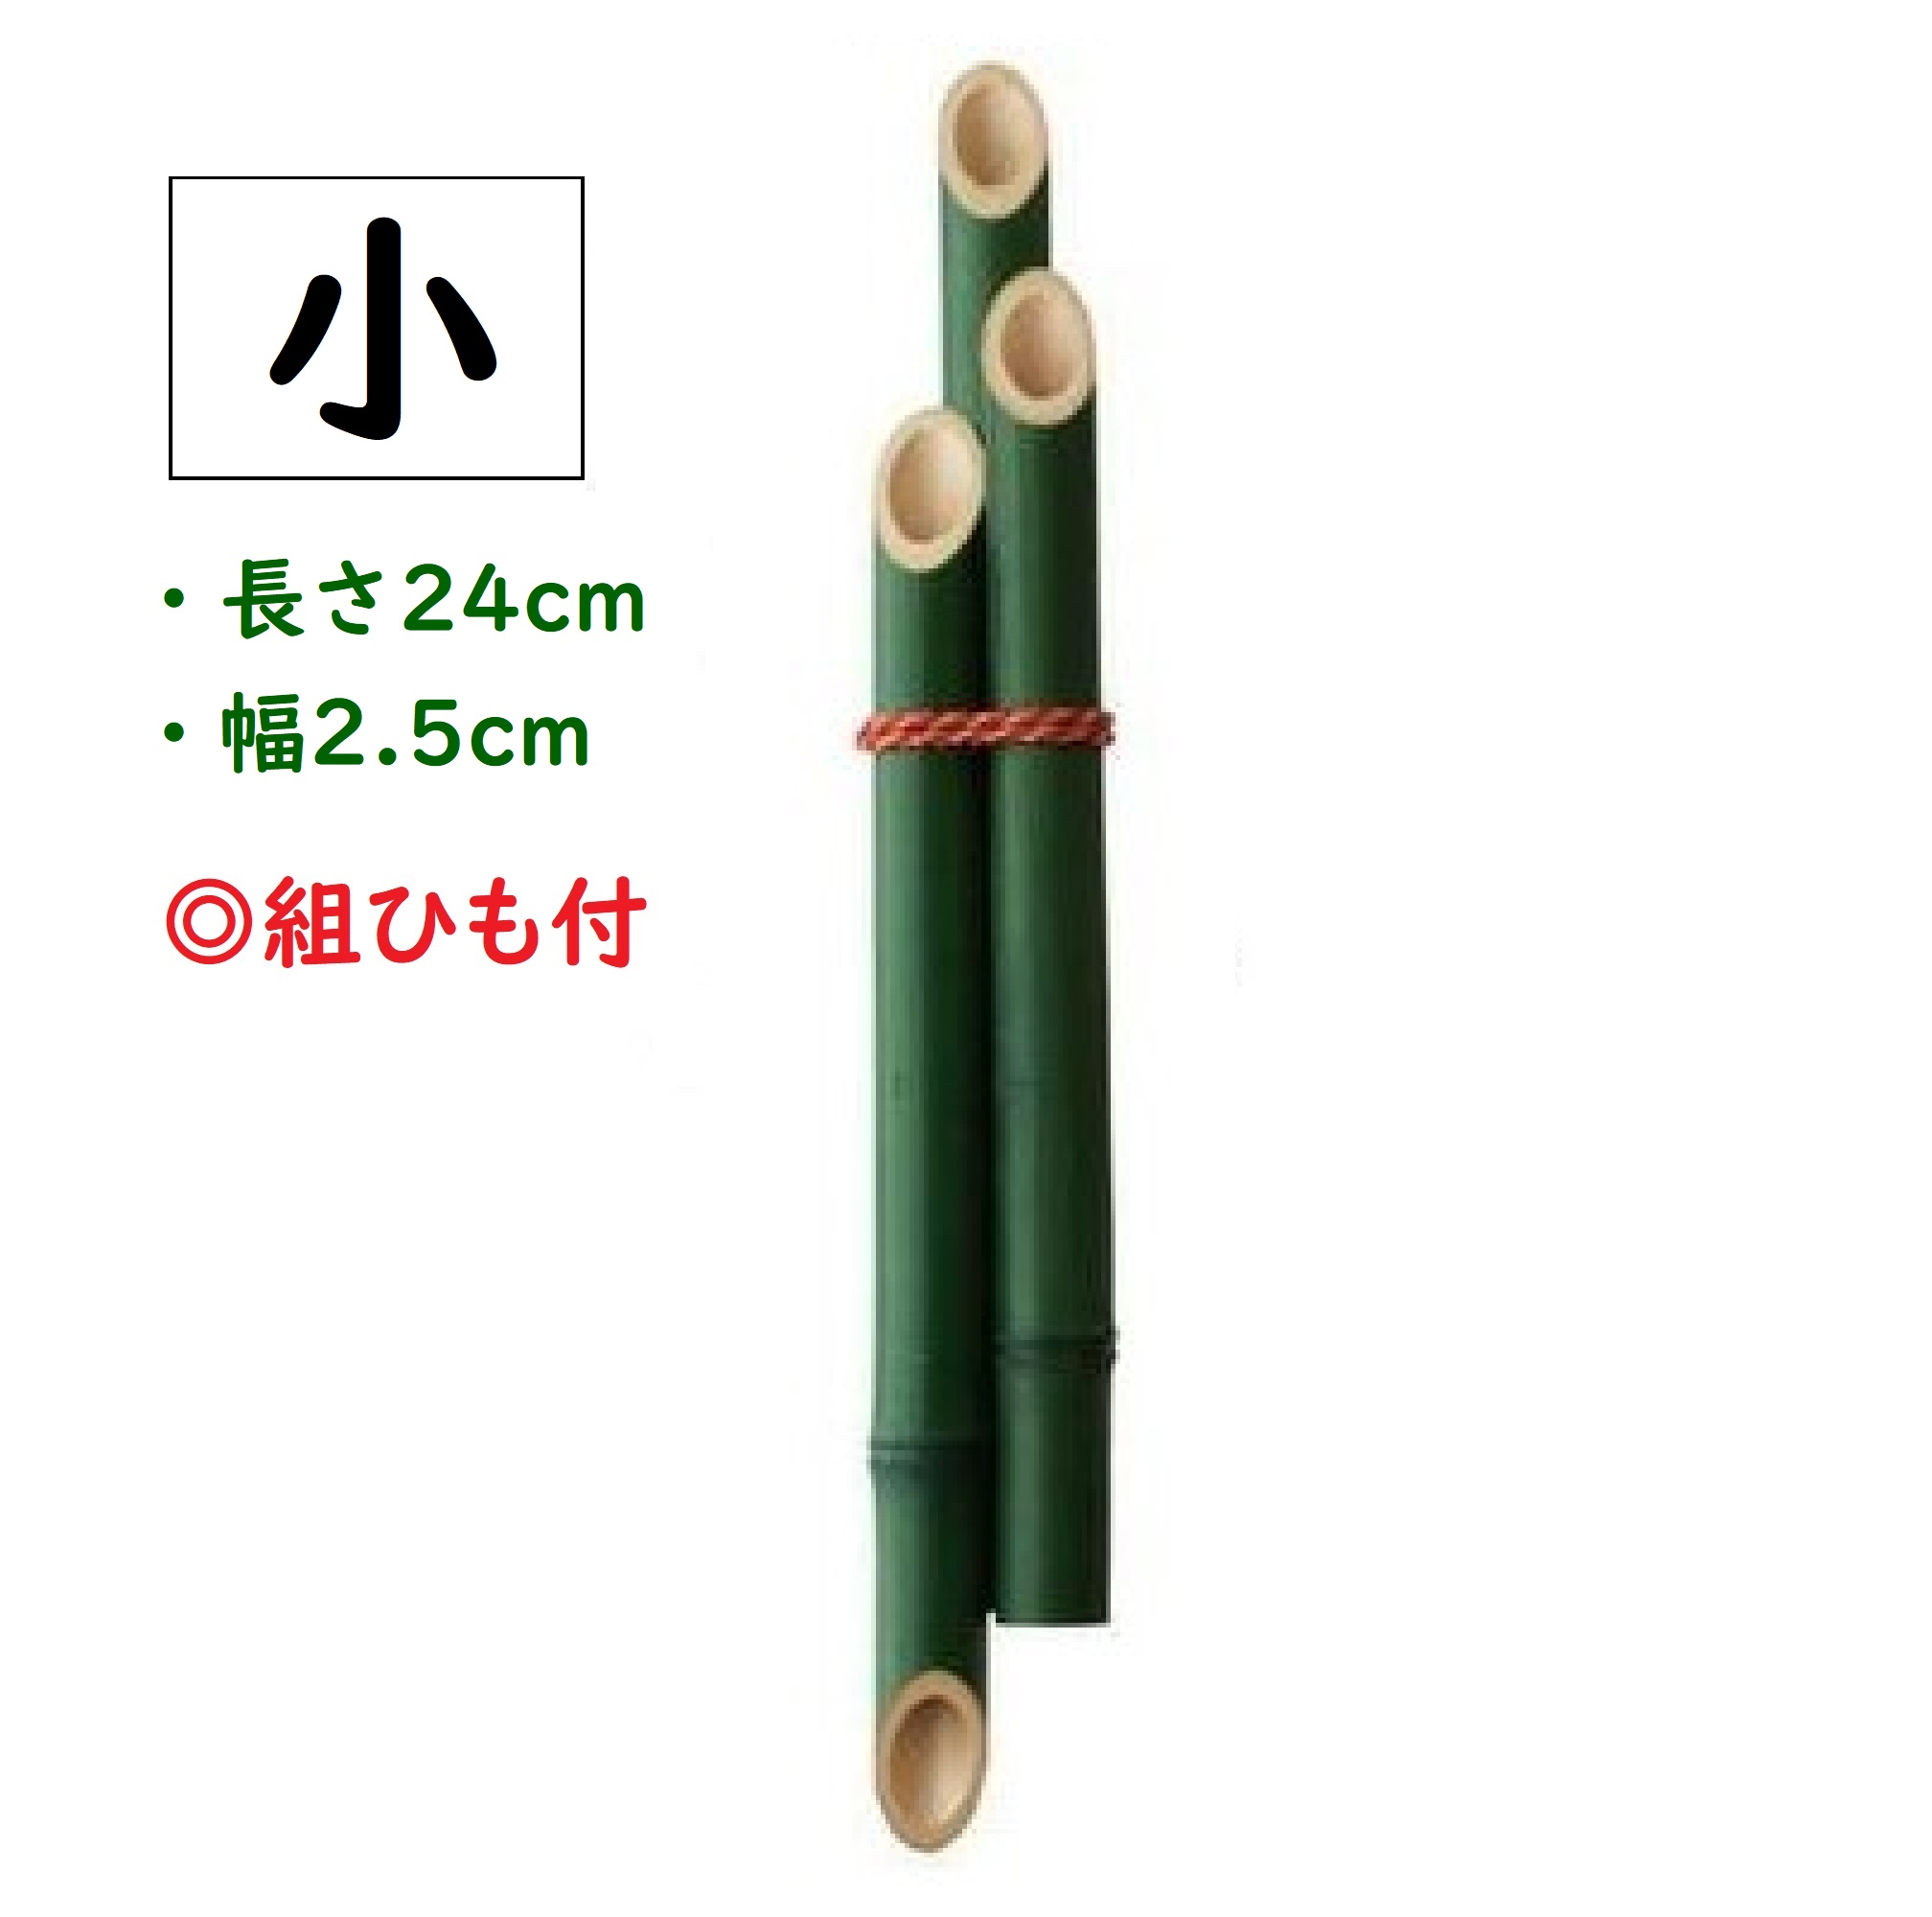 . сосна для бамбук 3 шт. комплект маленький комплект шнурок есть вне установленной формы . стоимость доставки 220 иен 